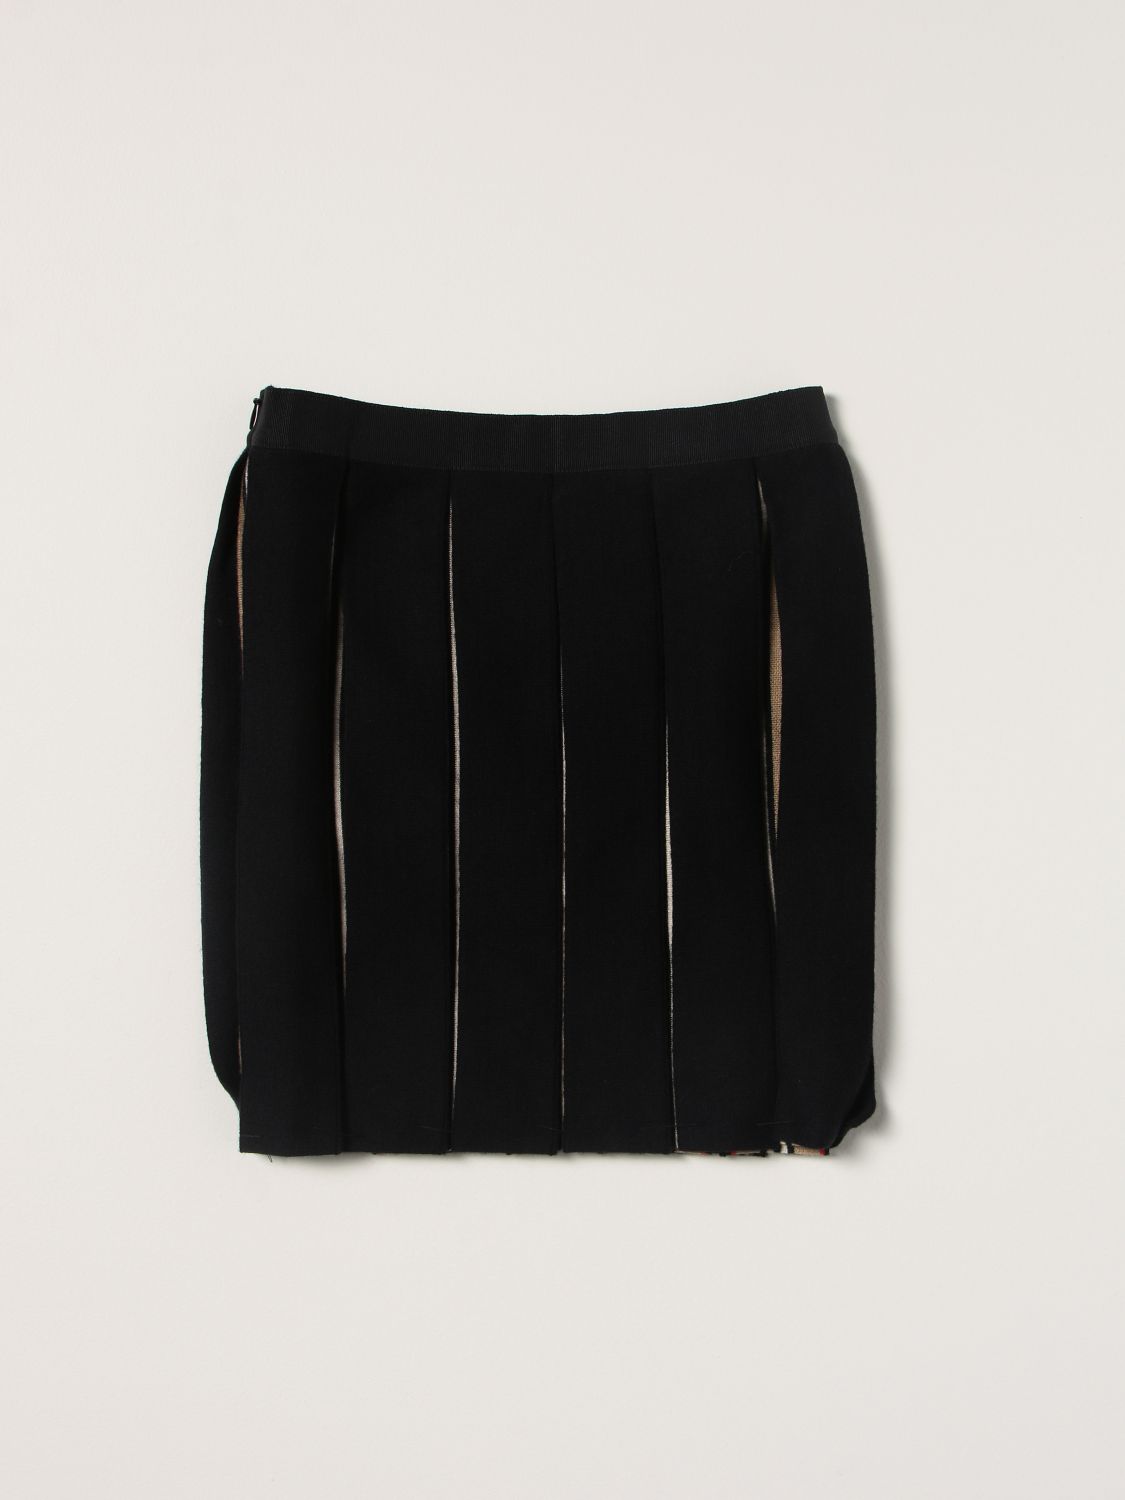 burberry skirt black